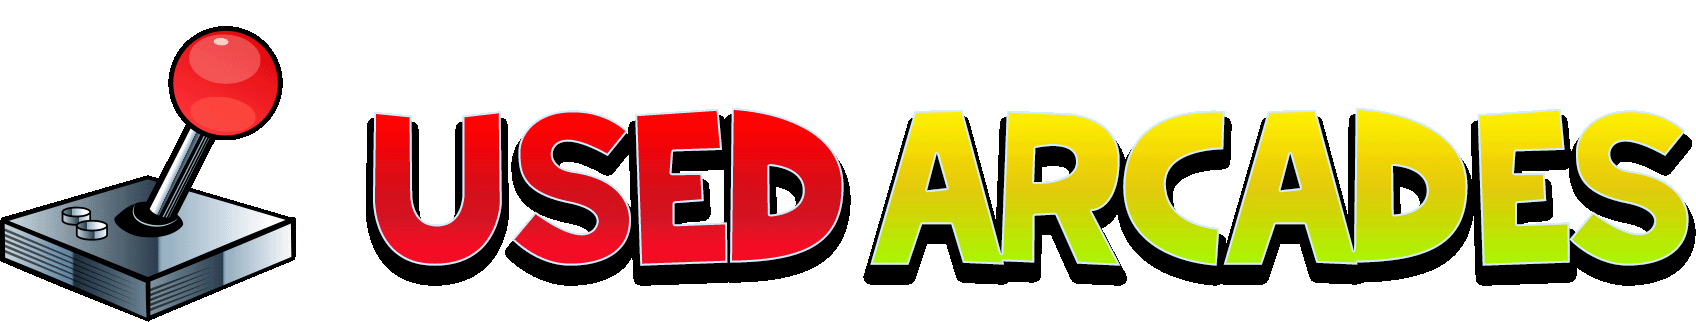 logo-animated